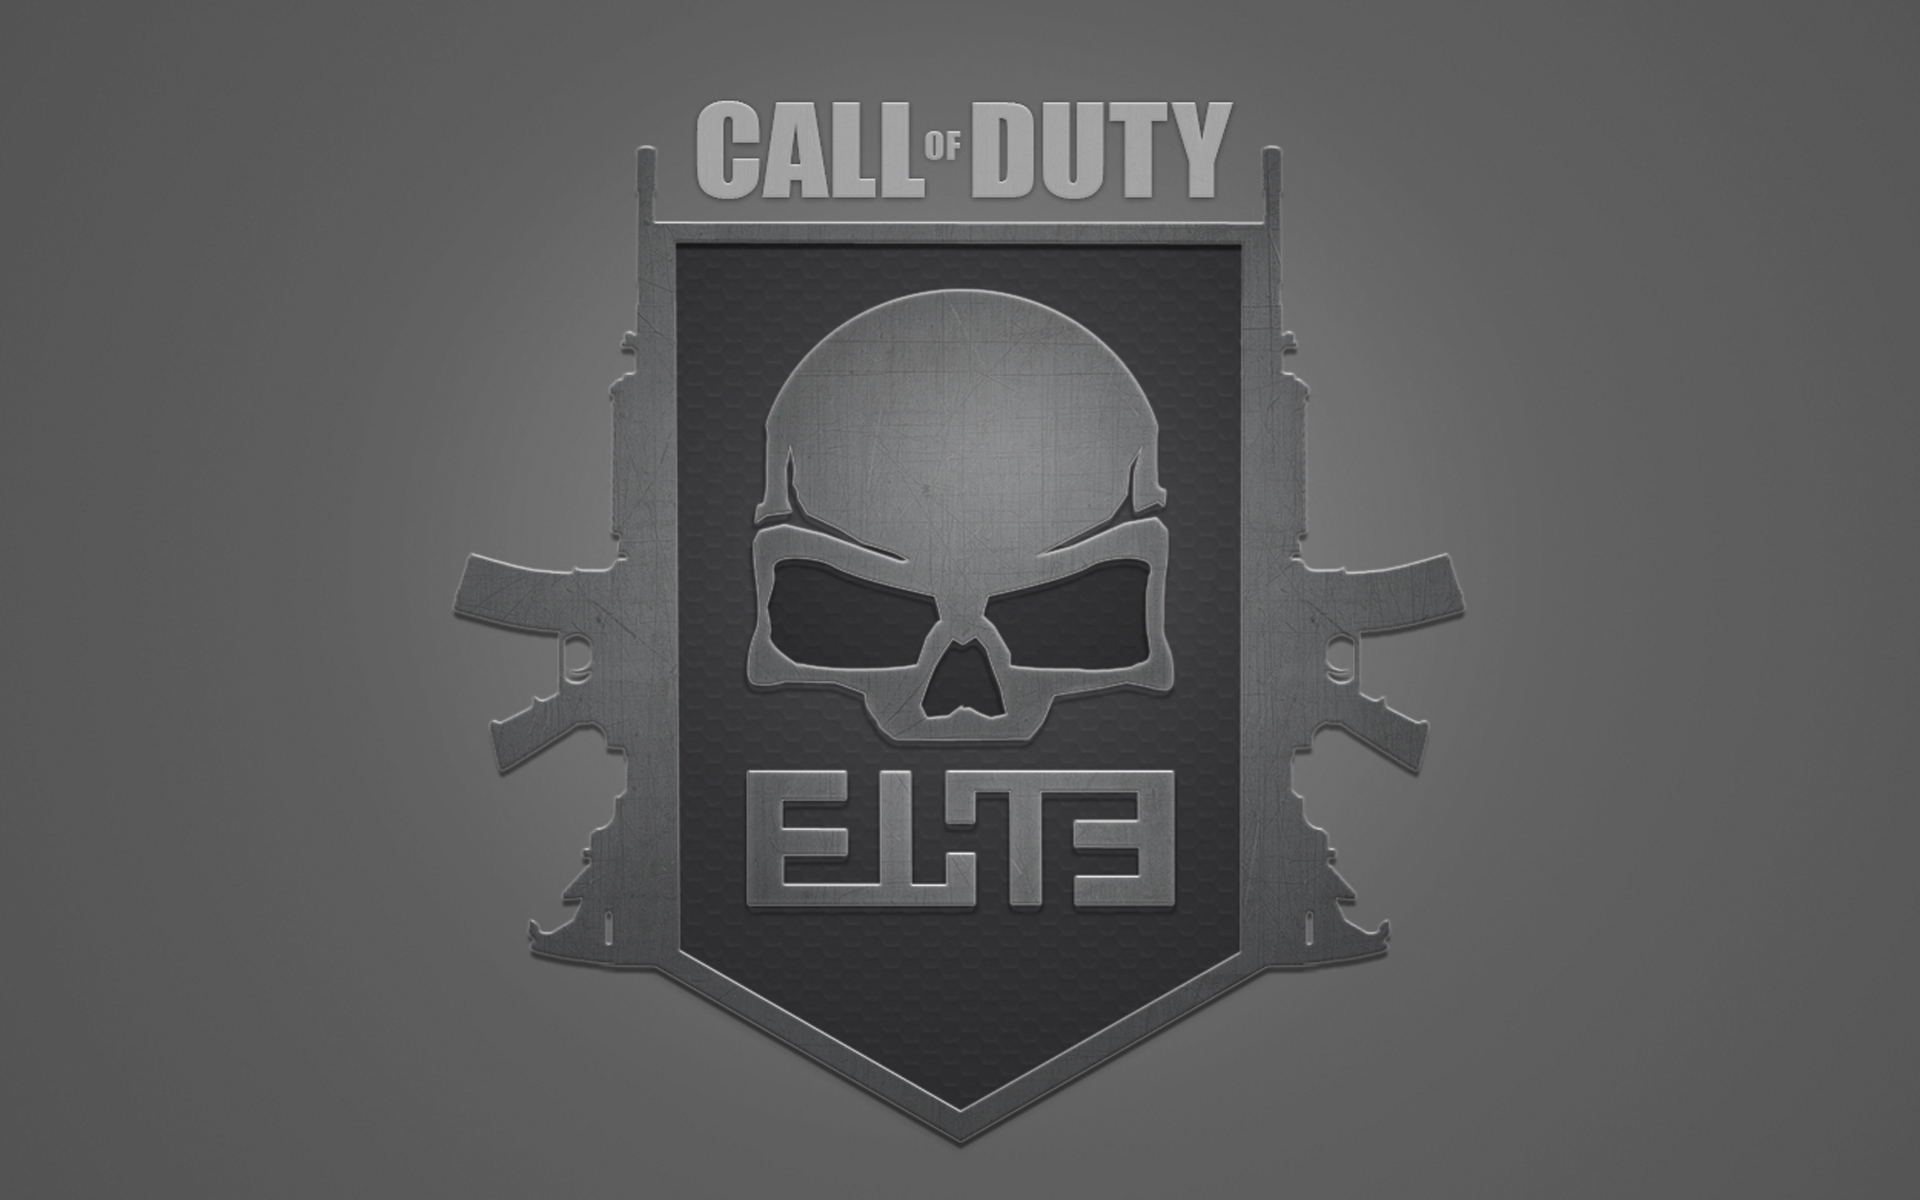 3d обои Для компьютерной игры Call od Duty ELITE череп вокруг которого автоматы Калашникова  игры # 41647